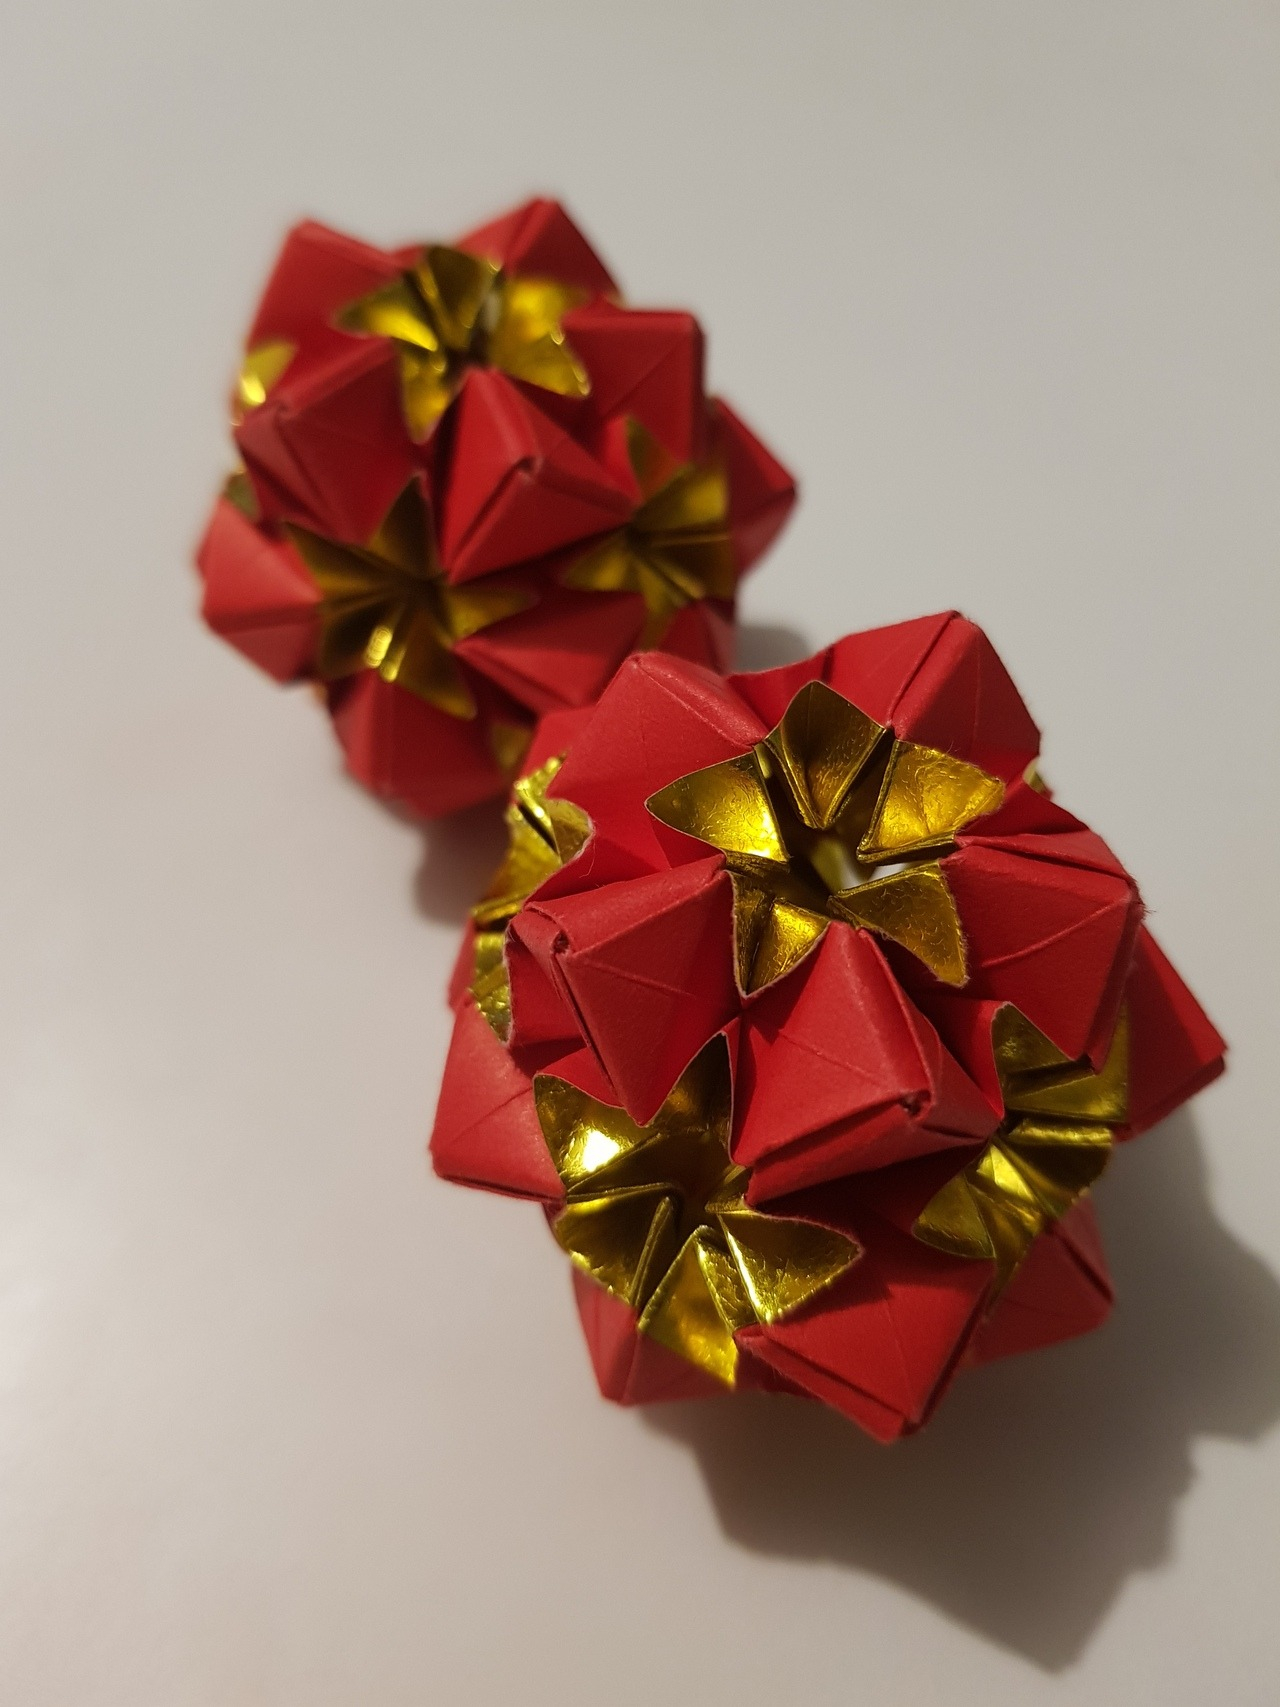 Origami Flower Star Meenakshi Mukerji Tumblr